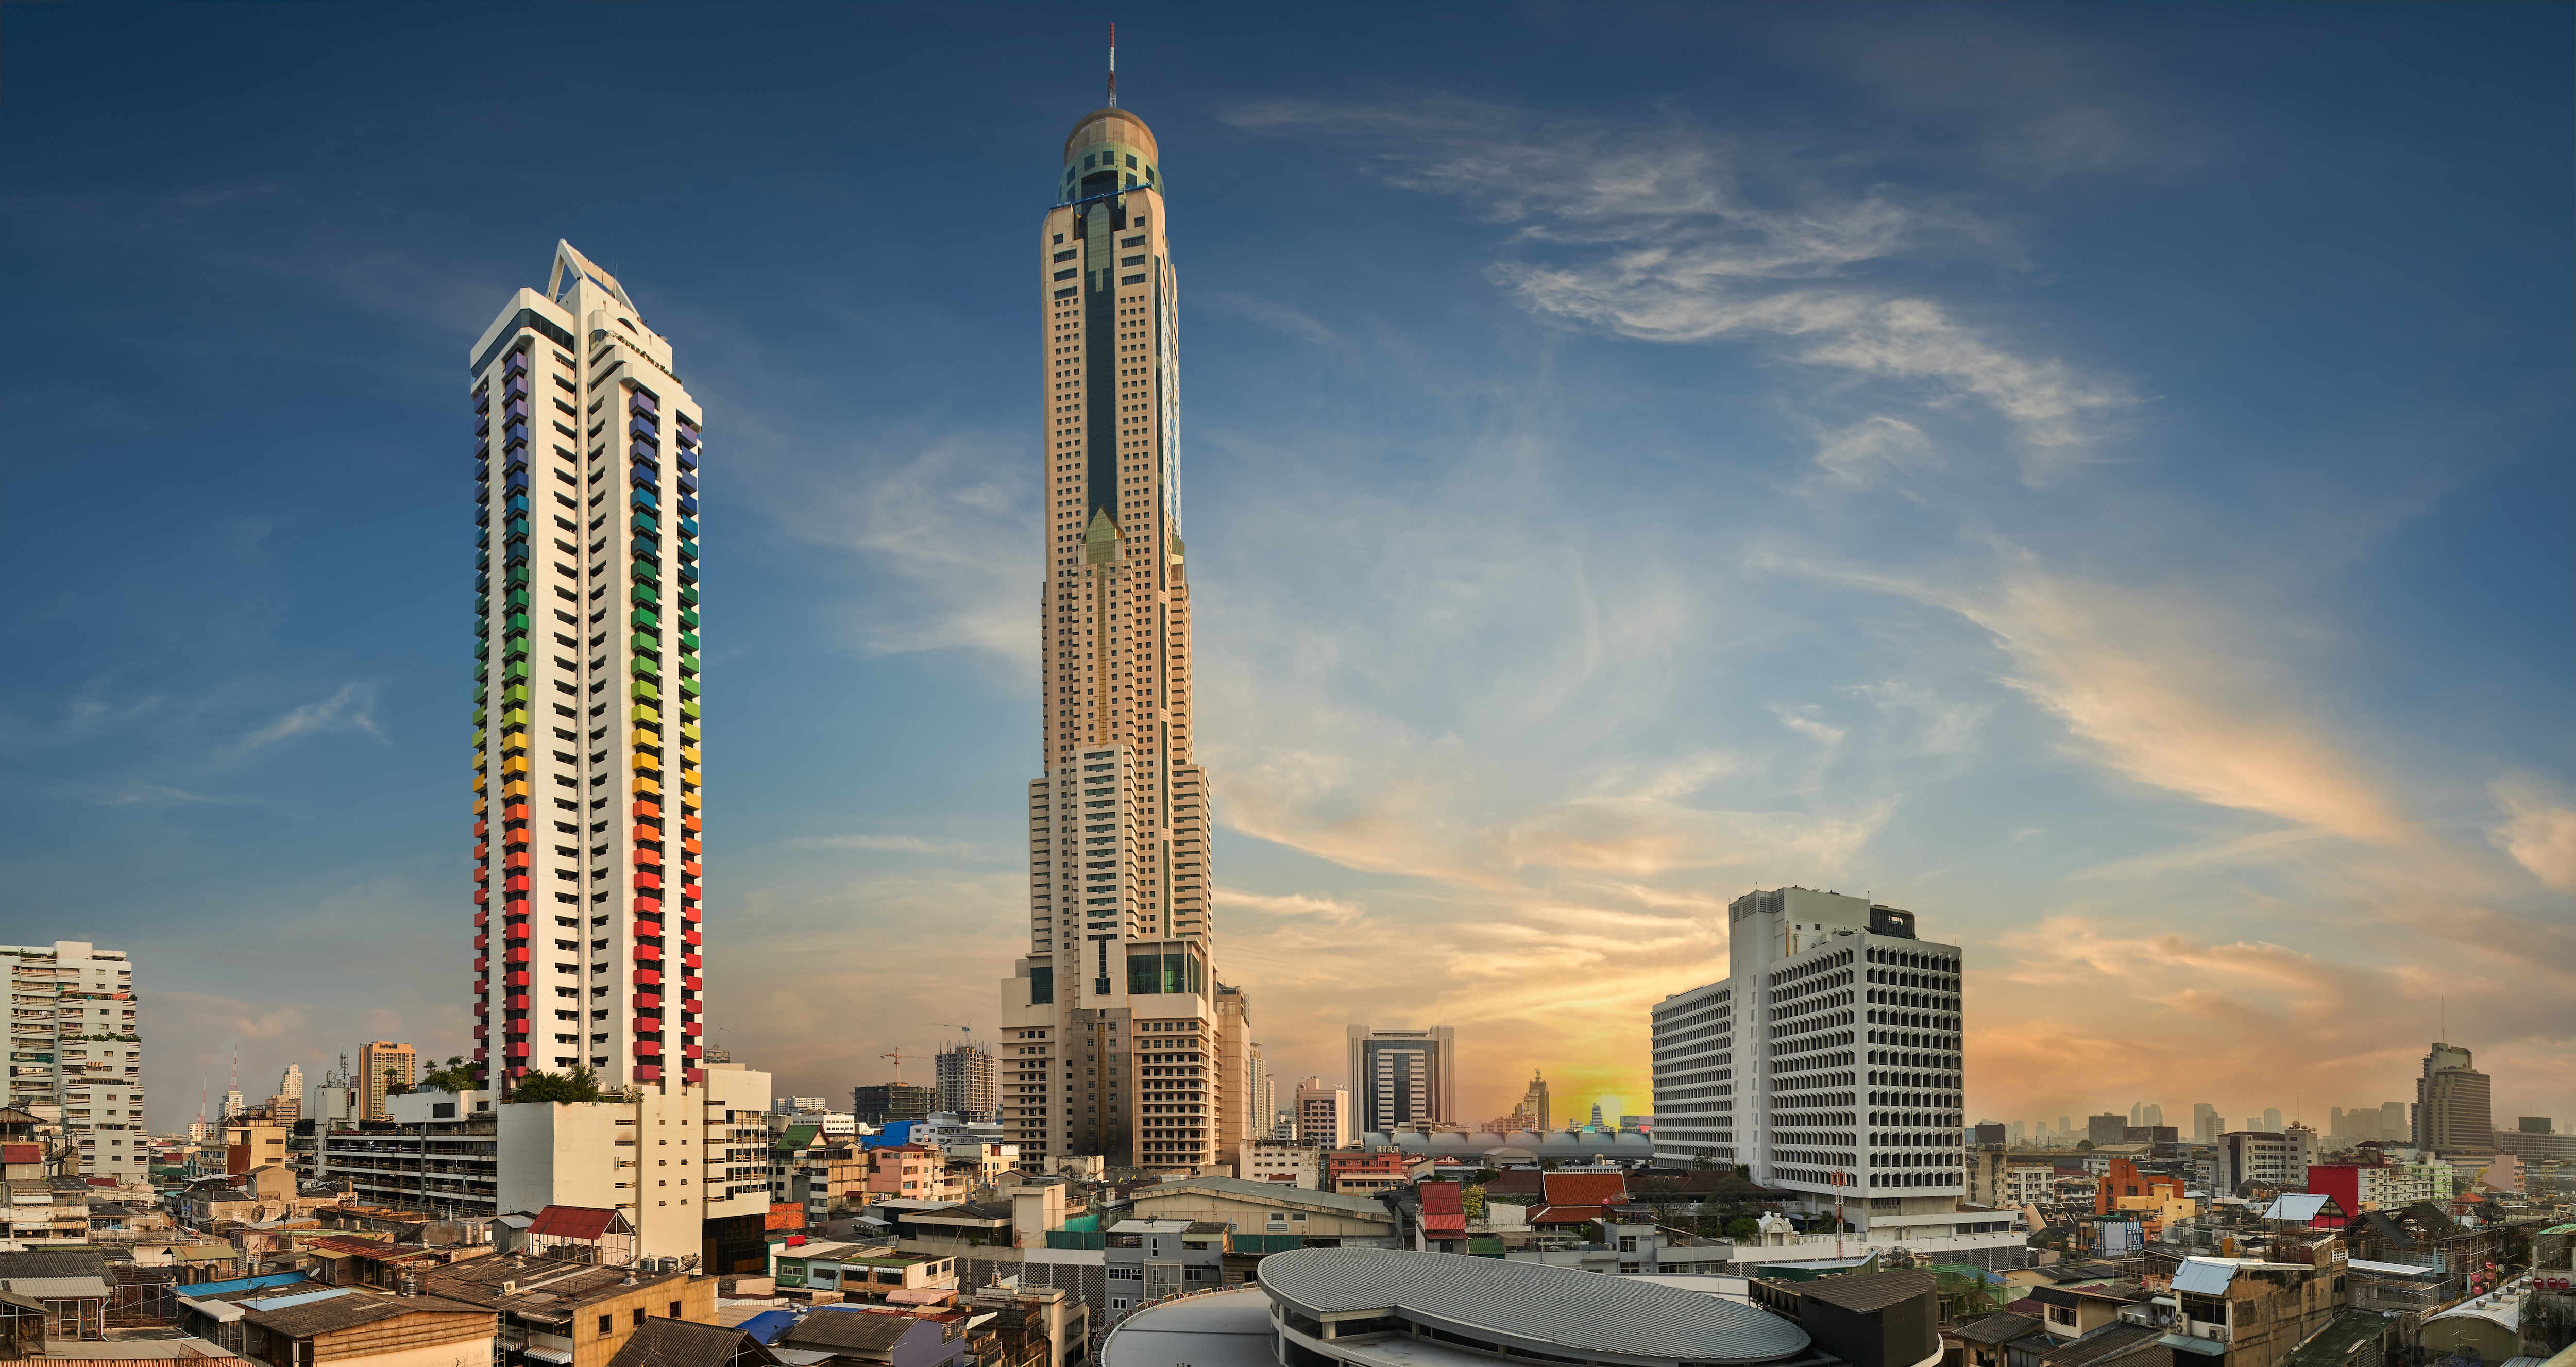 Bangkok Baiyoke Sky Tower 